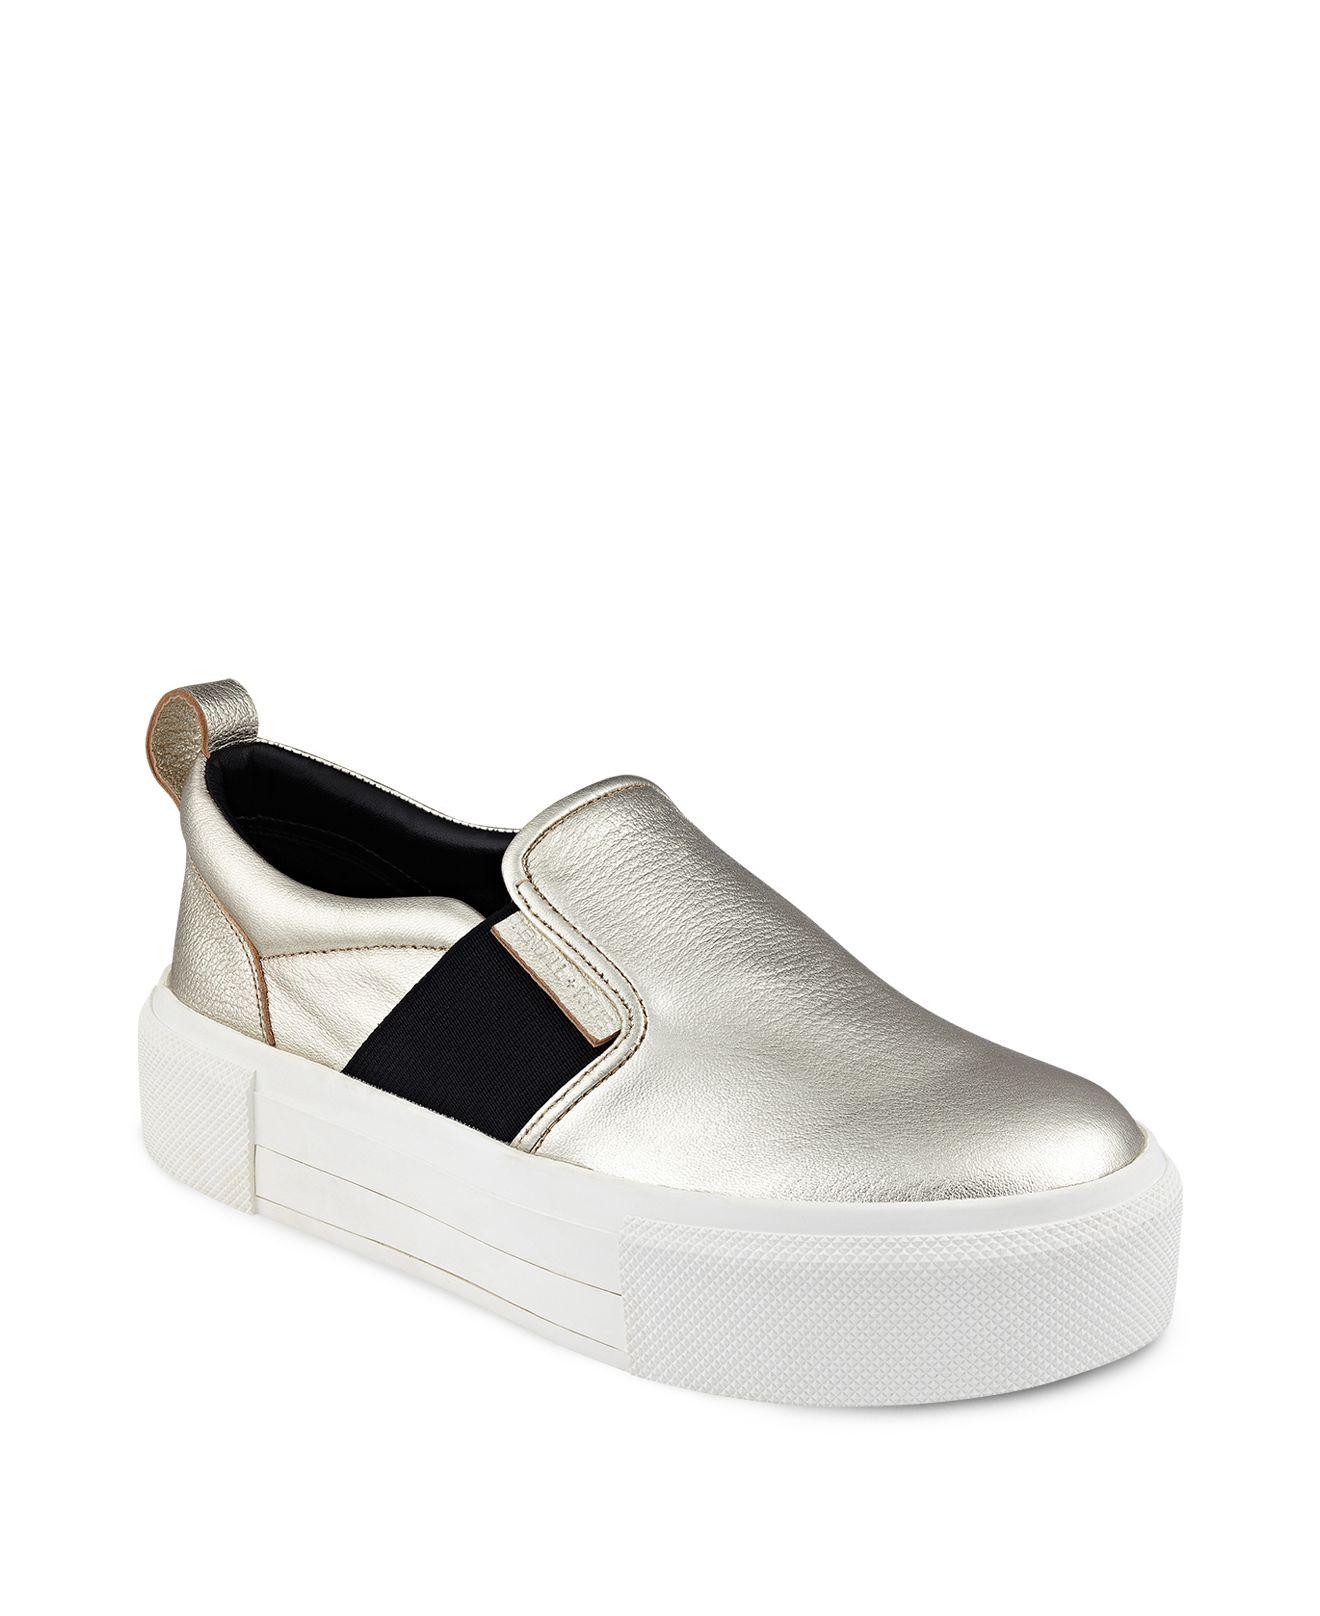 Kendall + kylie Tenley Platform Slip-on Sneakers in Metallic | Lyst